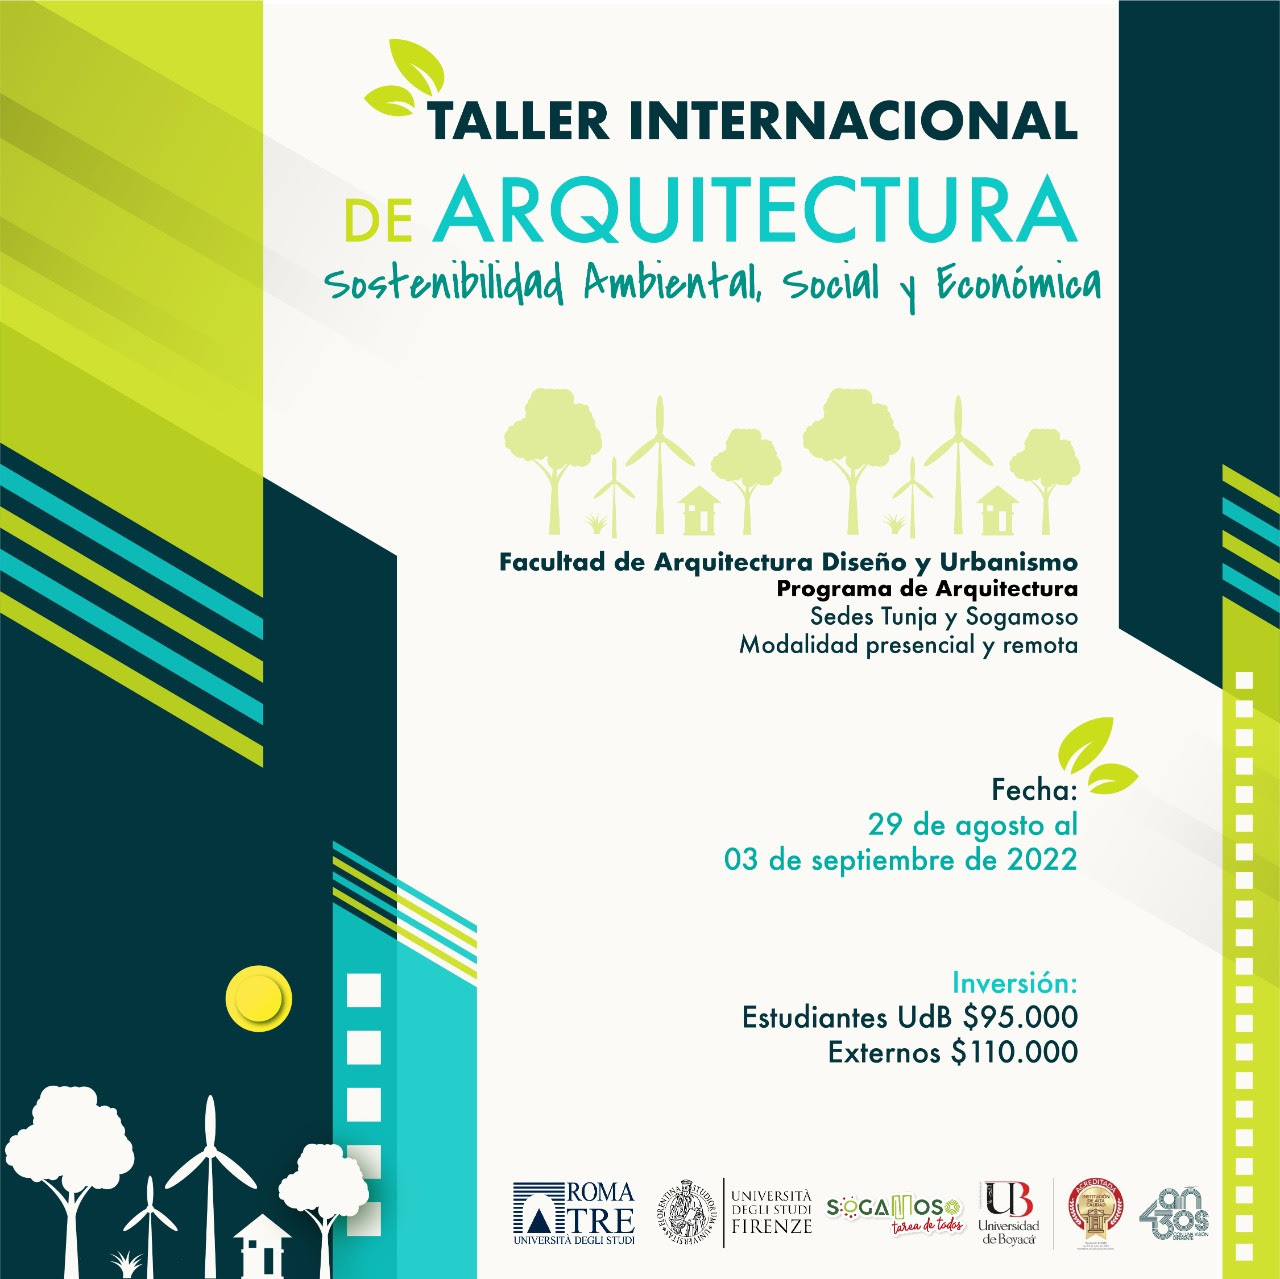 Taller Internacional de Arquitectura, Sostenibilidad Ambiental, Social y Económica